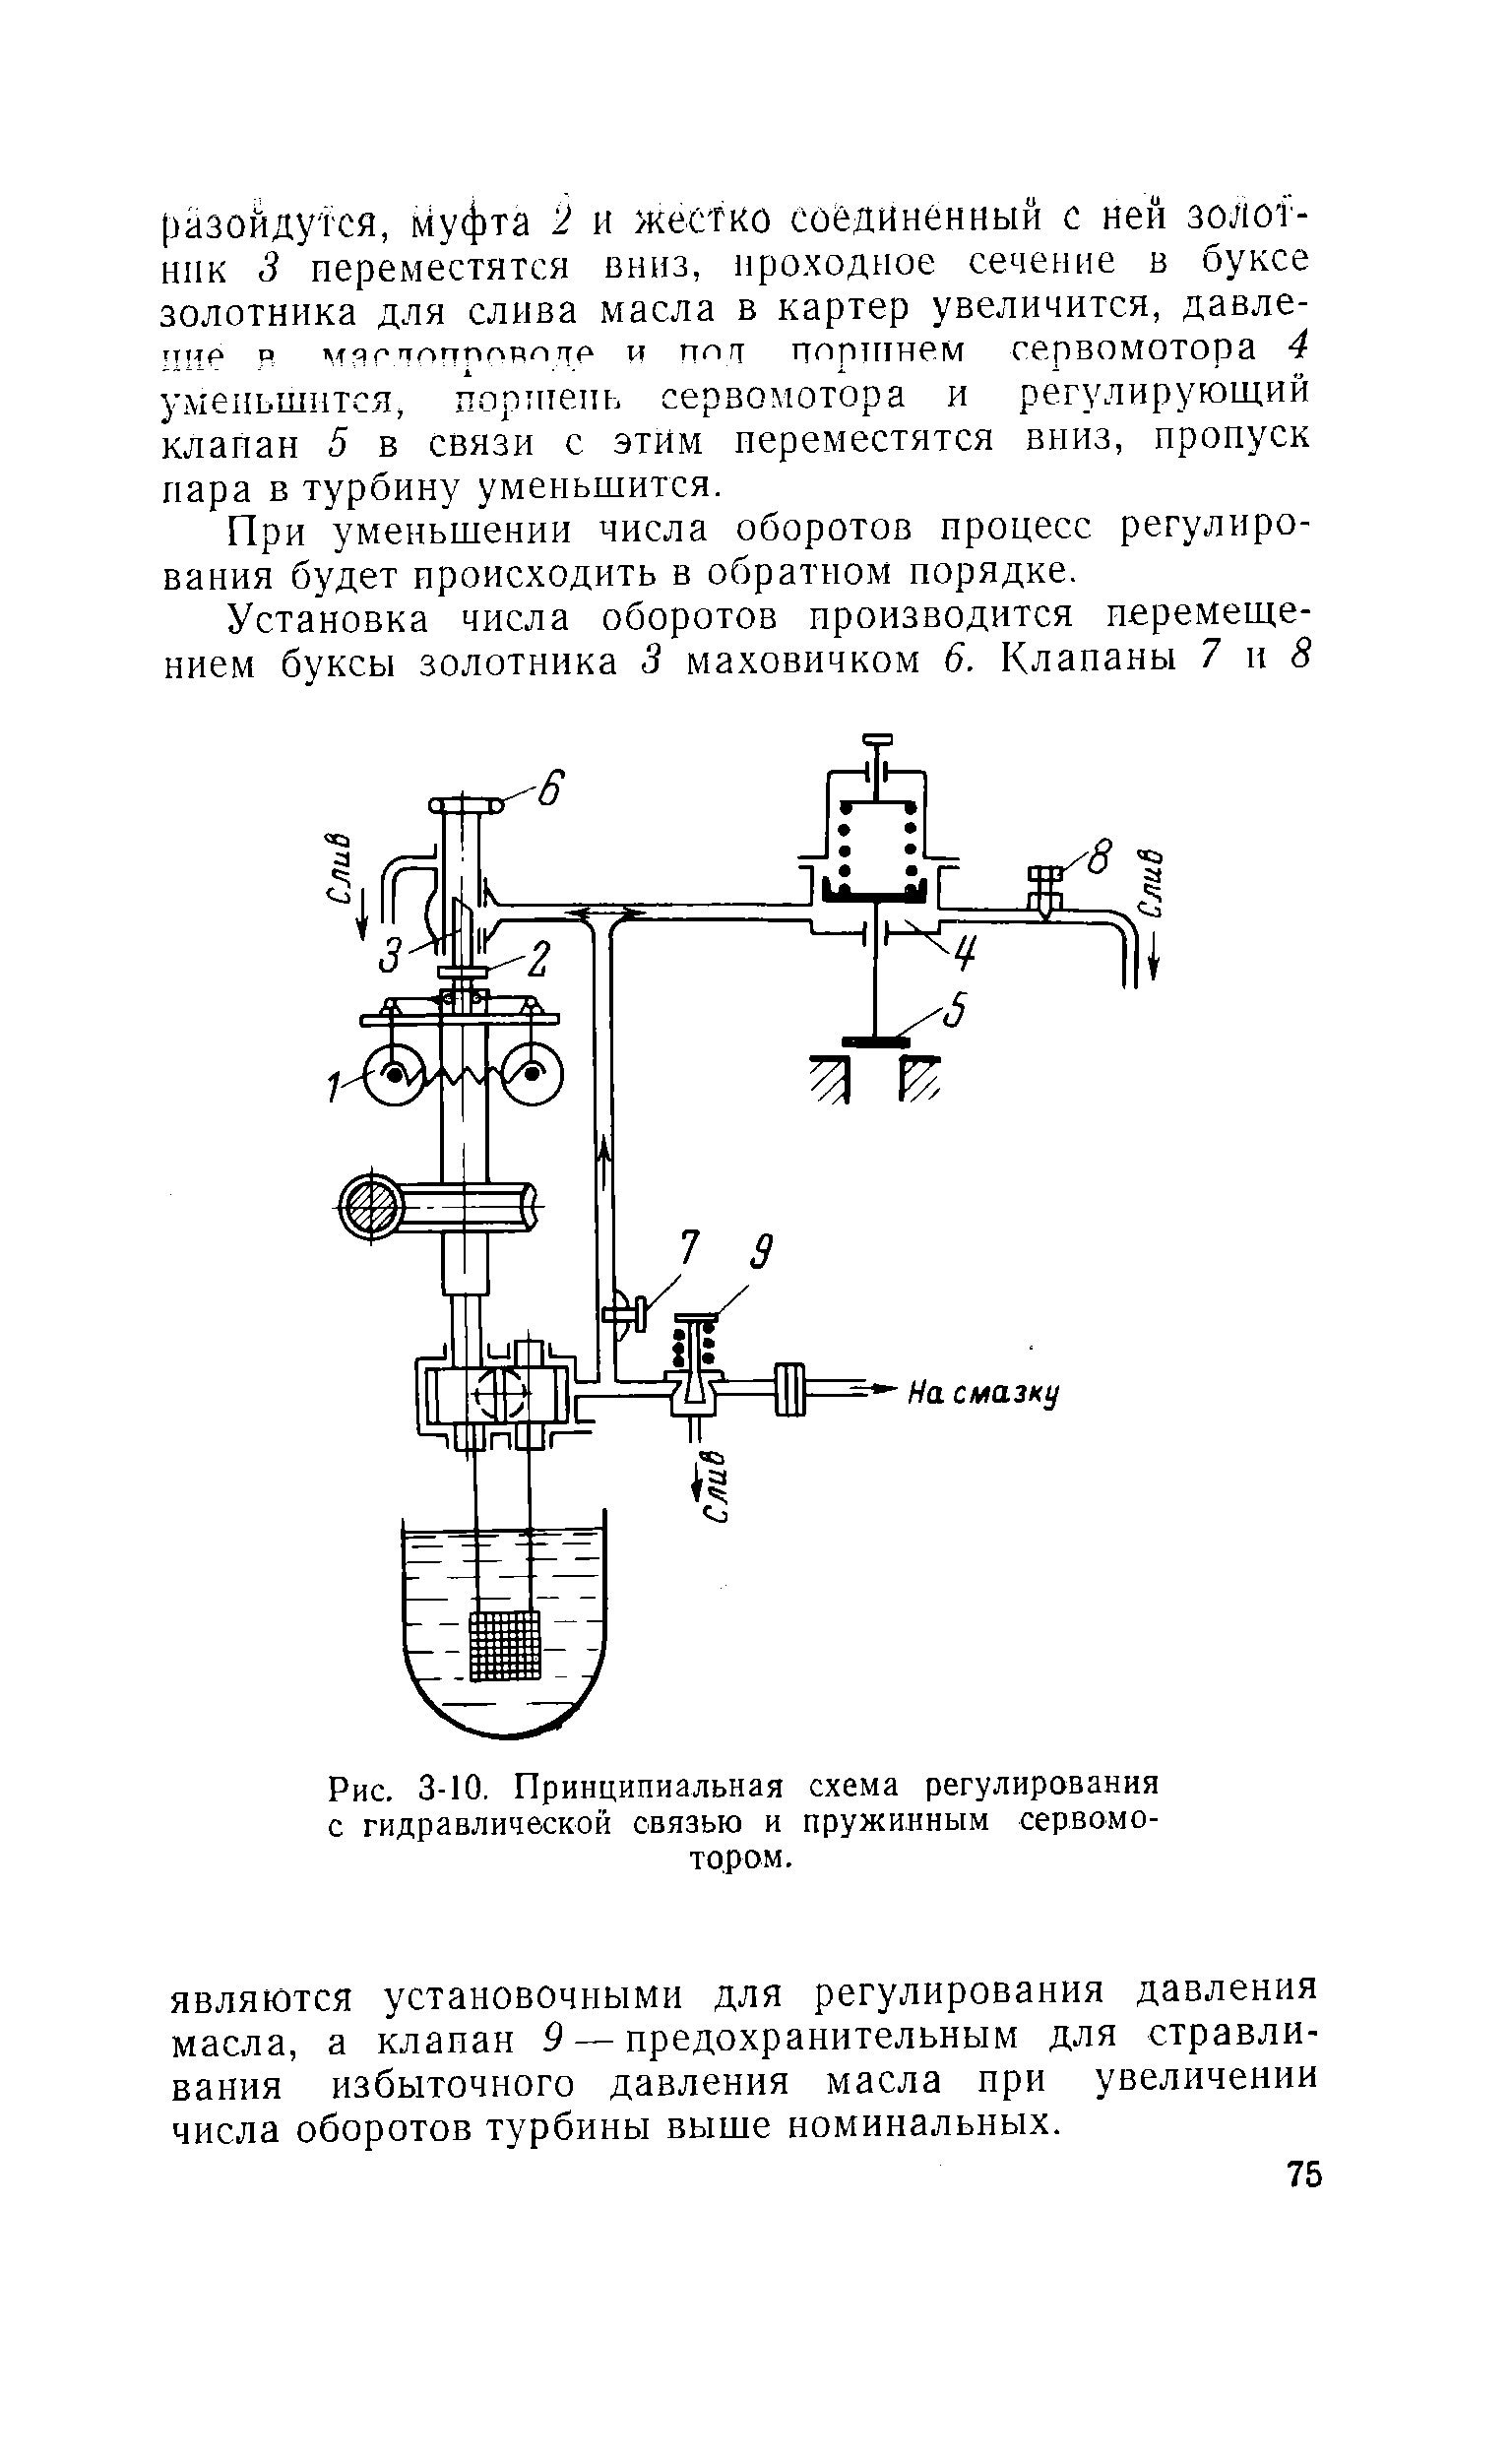 Рис. 3-10, Принципиальная схема регулирования с гидравлической связью и пружинным сервомотором.
